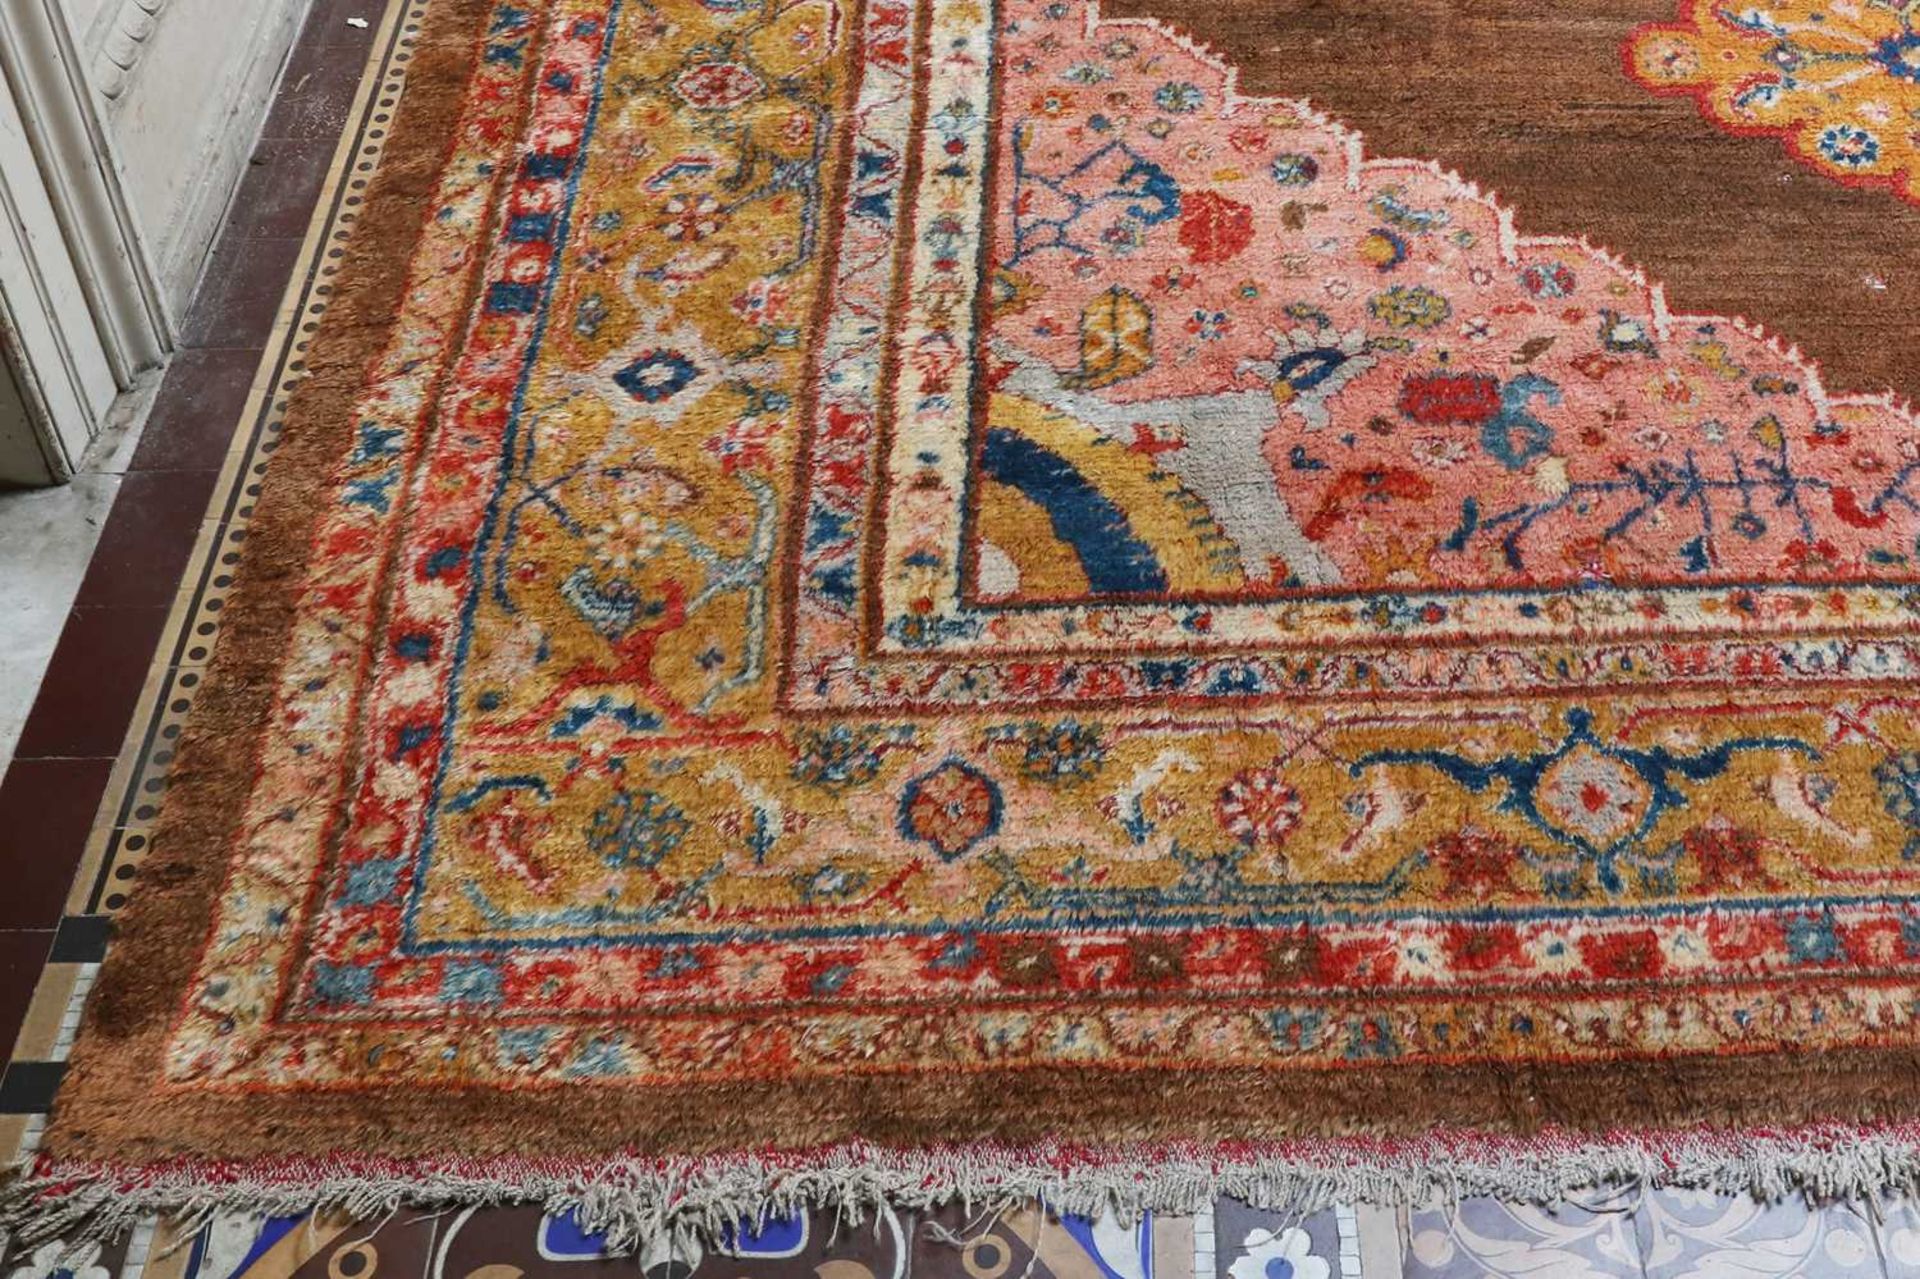 ☘ A Kurdish wool carpet, - Image 6 of 48